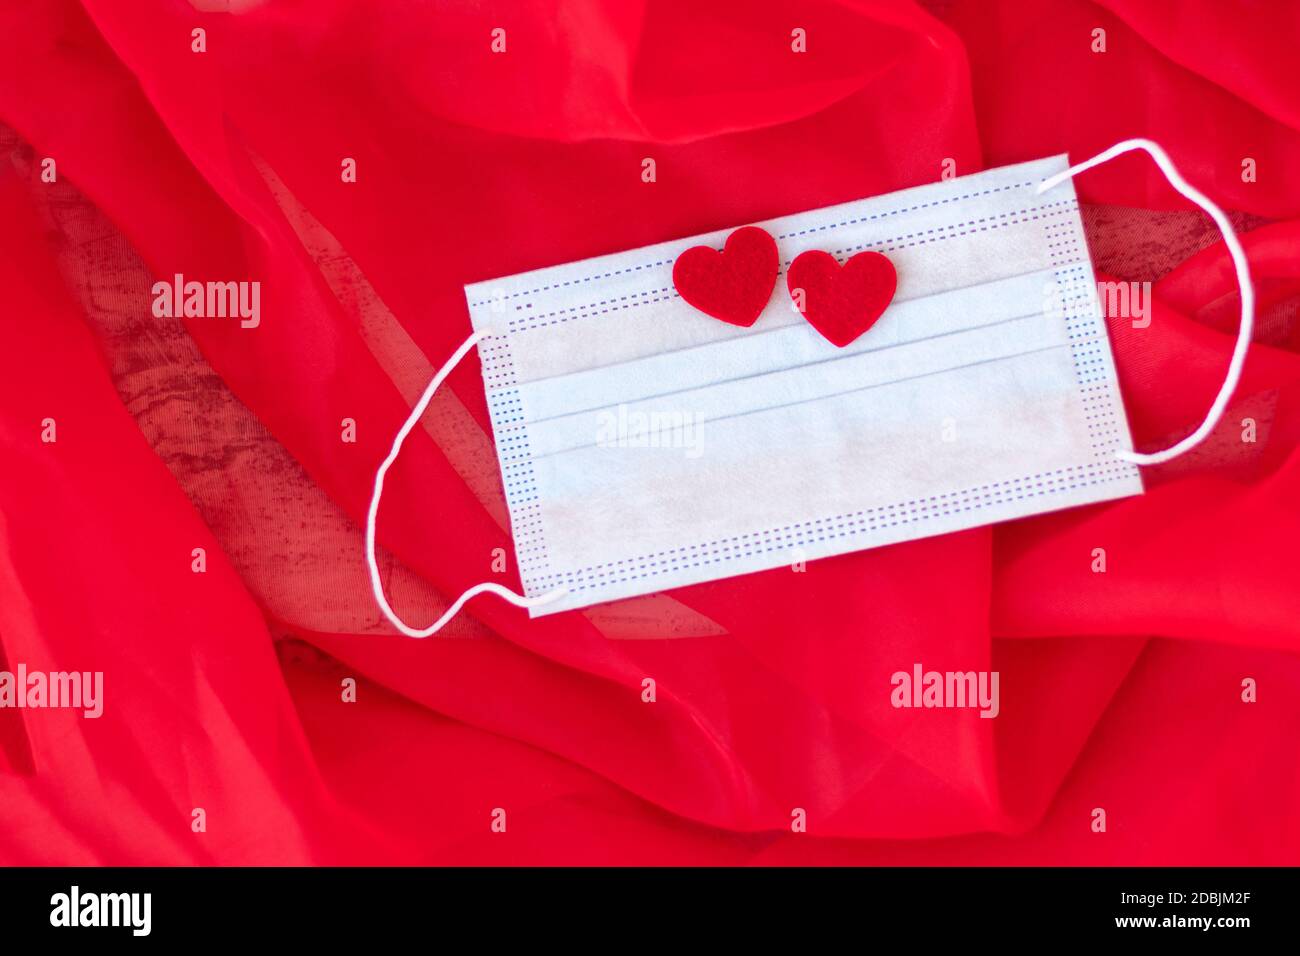 Blaue medizinische Schutzmaske mit zwei roten Herzen auf rotem Hintergrund. Romantisches Geschenk zum Valentinstag. Liebe. Konzept des Heiratsvorschlags. Weichfokus. Speicherplatz kopieren. Draufsicht Stockfoto